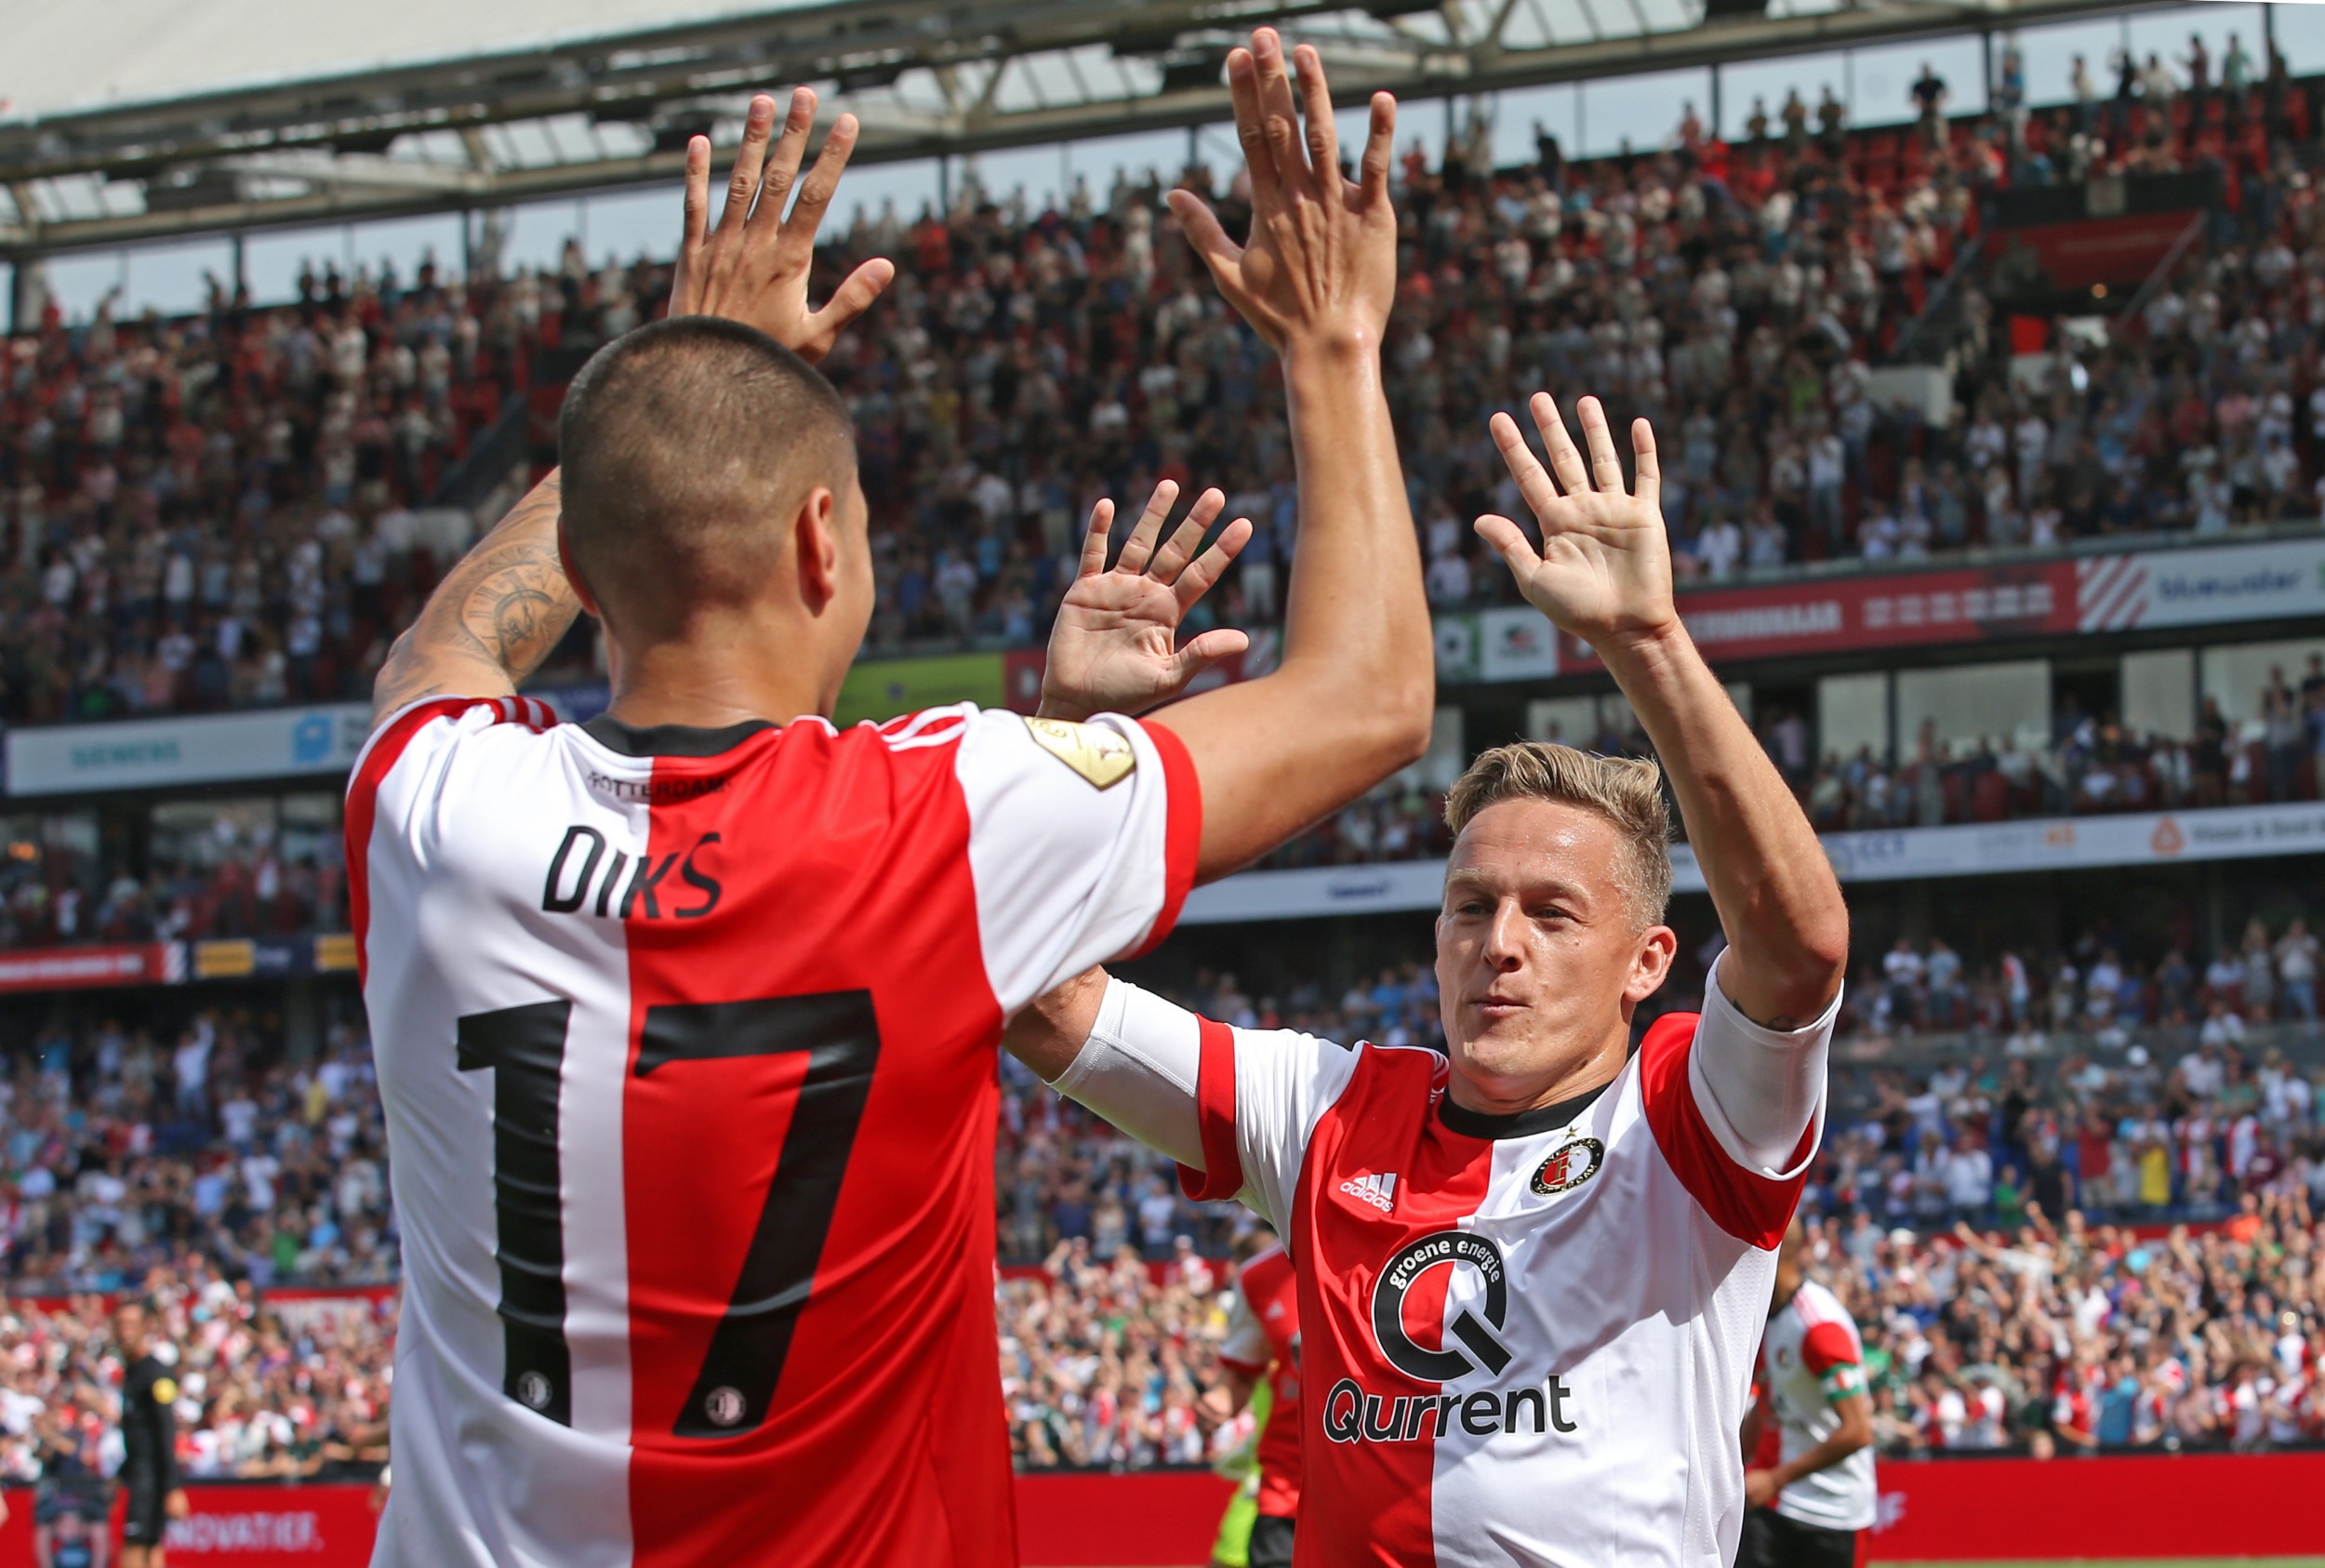 oppervlakkig Verfrissend Luiheid Feyenoord strijdt voor zeventiende bekerfinale- Feyenoord.nl